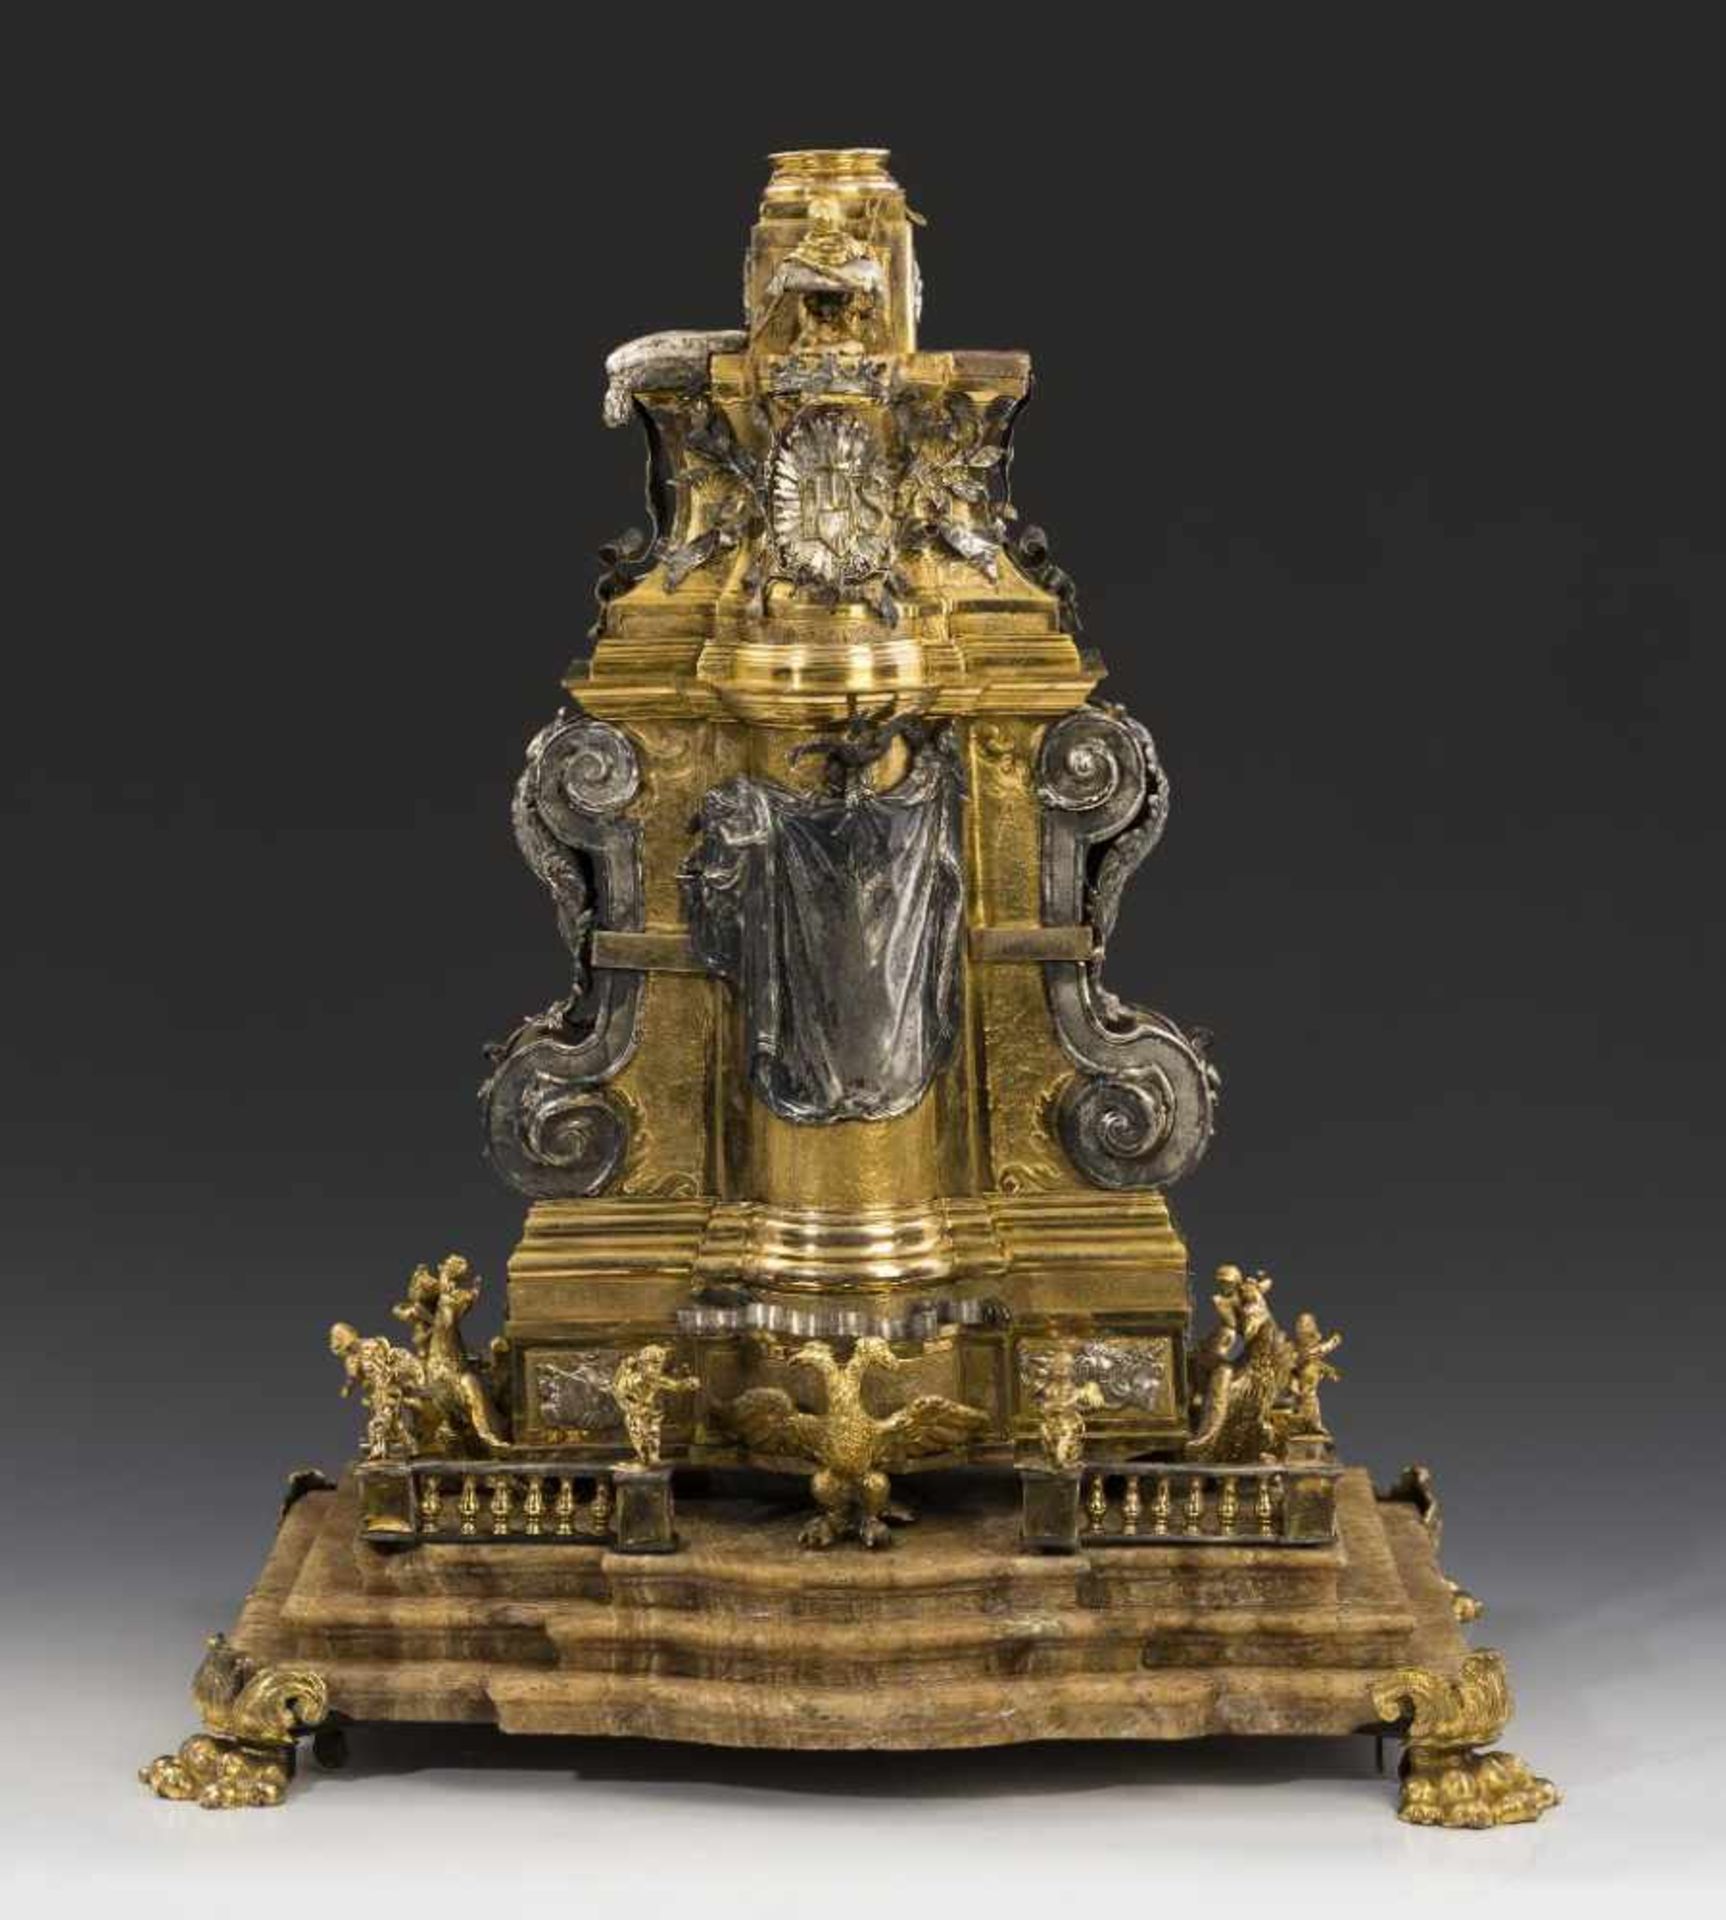 Modell eines Denkmales der Habsburger Monarchie. Auf vier Tatzenfüßen getreppte Marmorplatte, darauf